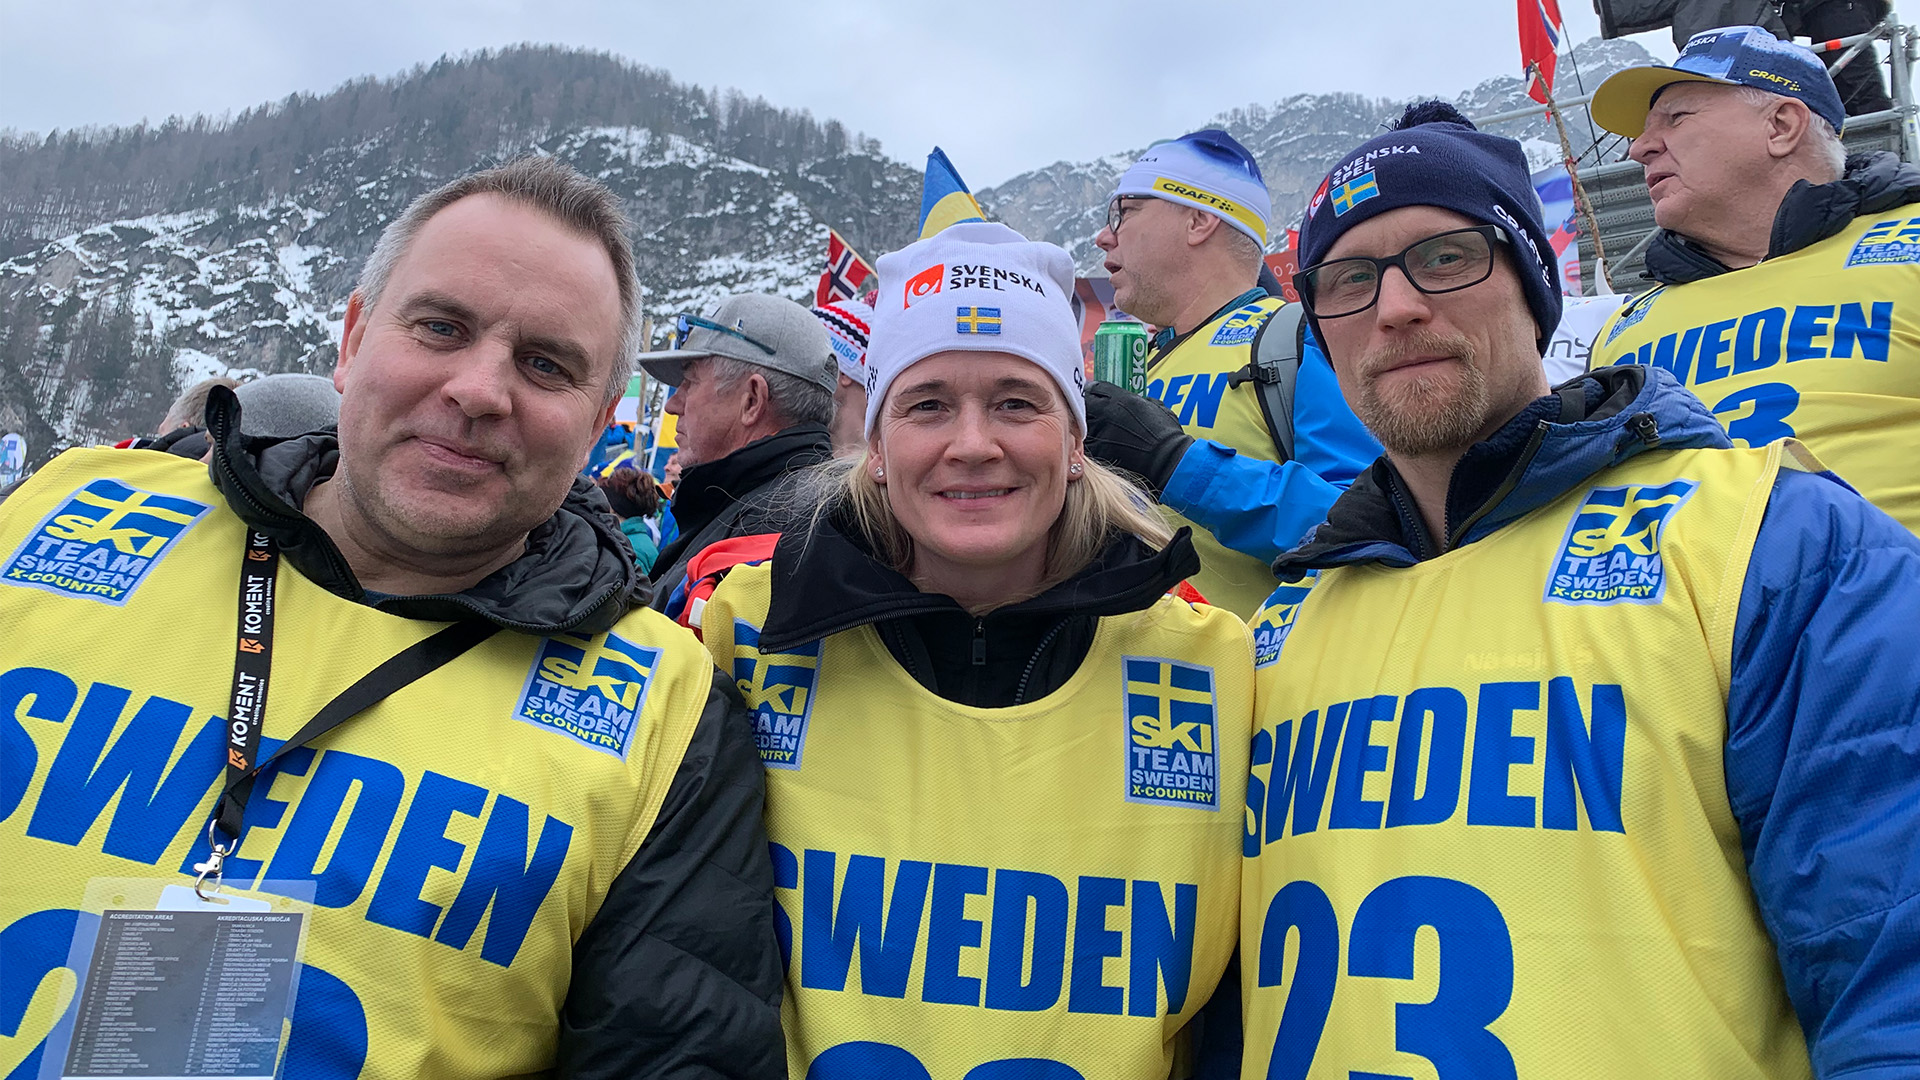 Tre lyckliga ungdomsledare som ärades med en resa till VM i Planica efter att blivit nominerade i Svenska Spels aktivitet tidigare i år.